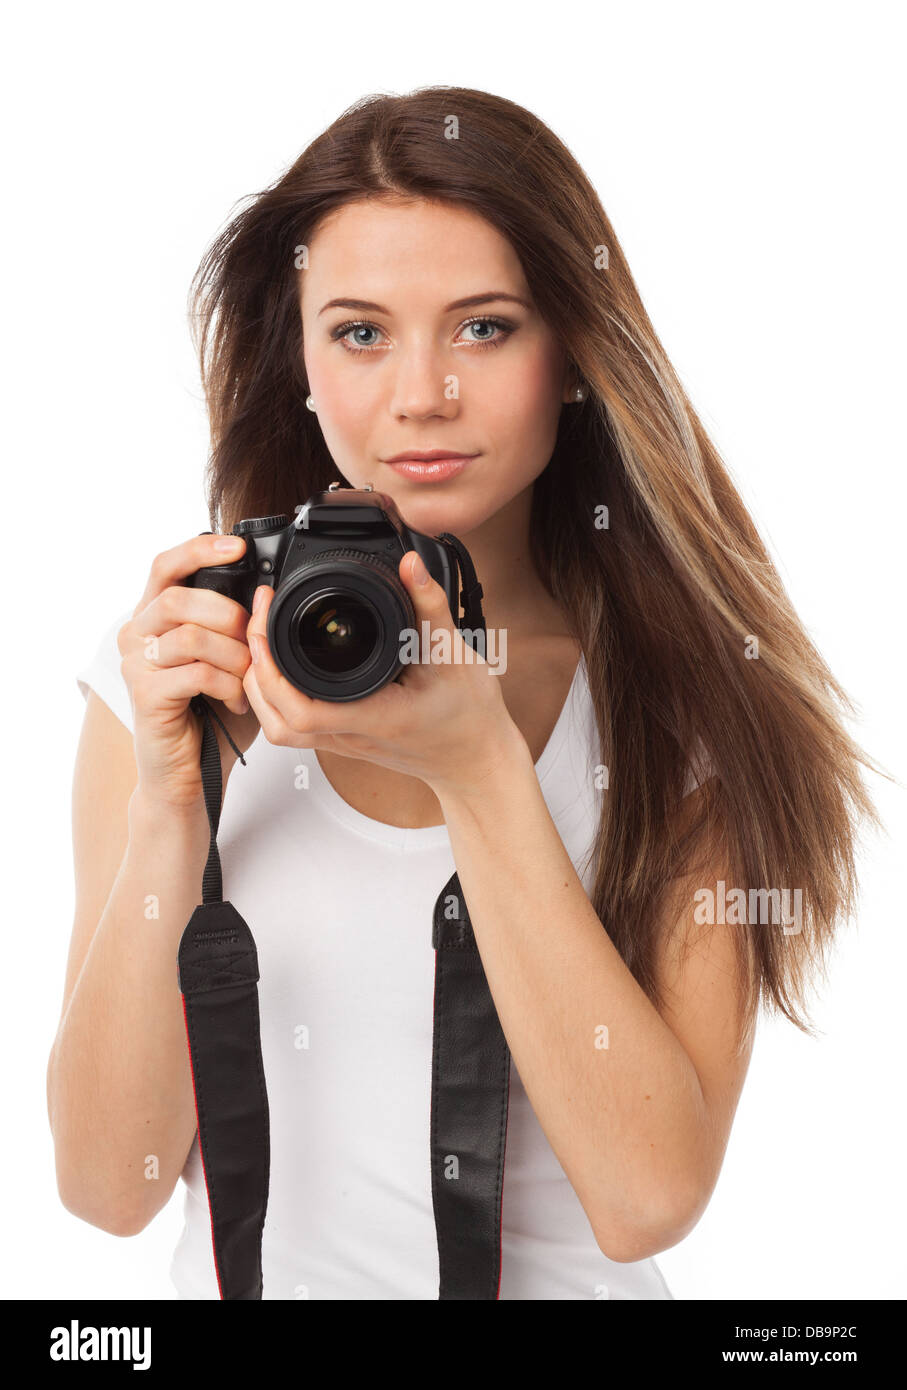 Ritratto di una giovane donna con fotocamera digitale, isolato su bianco Foto Stock